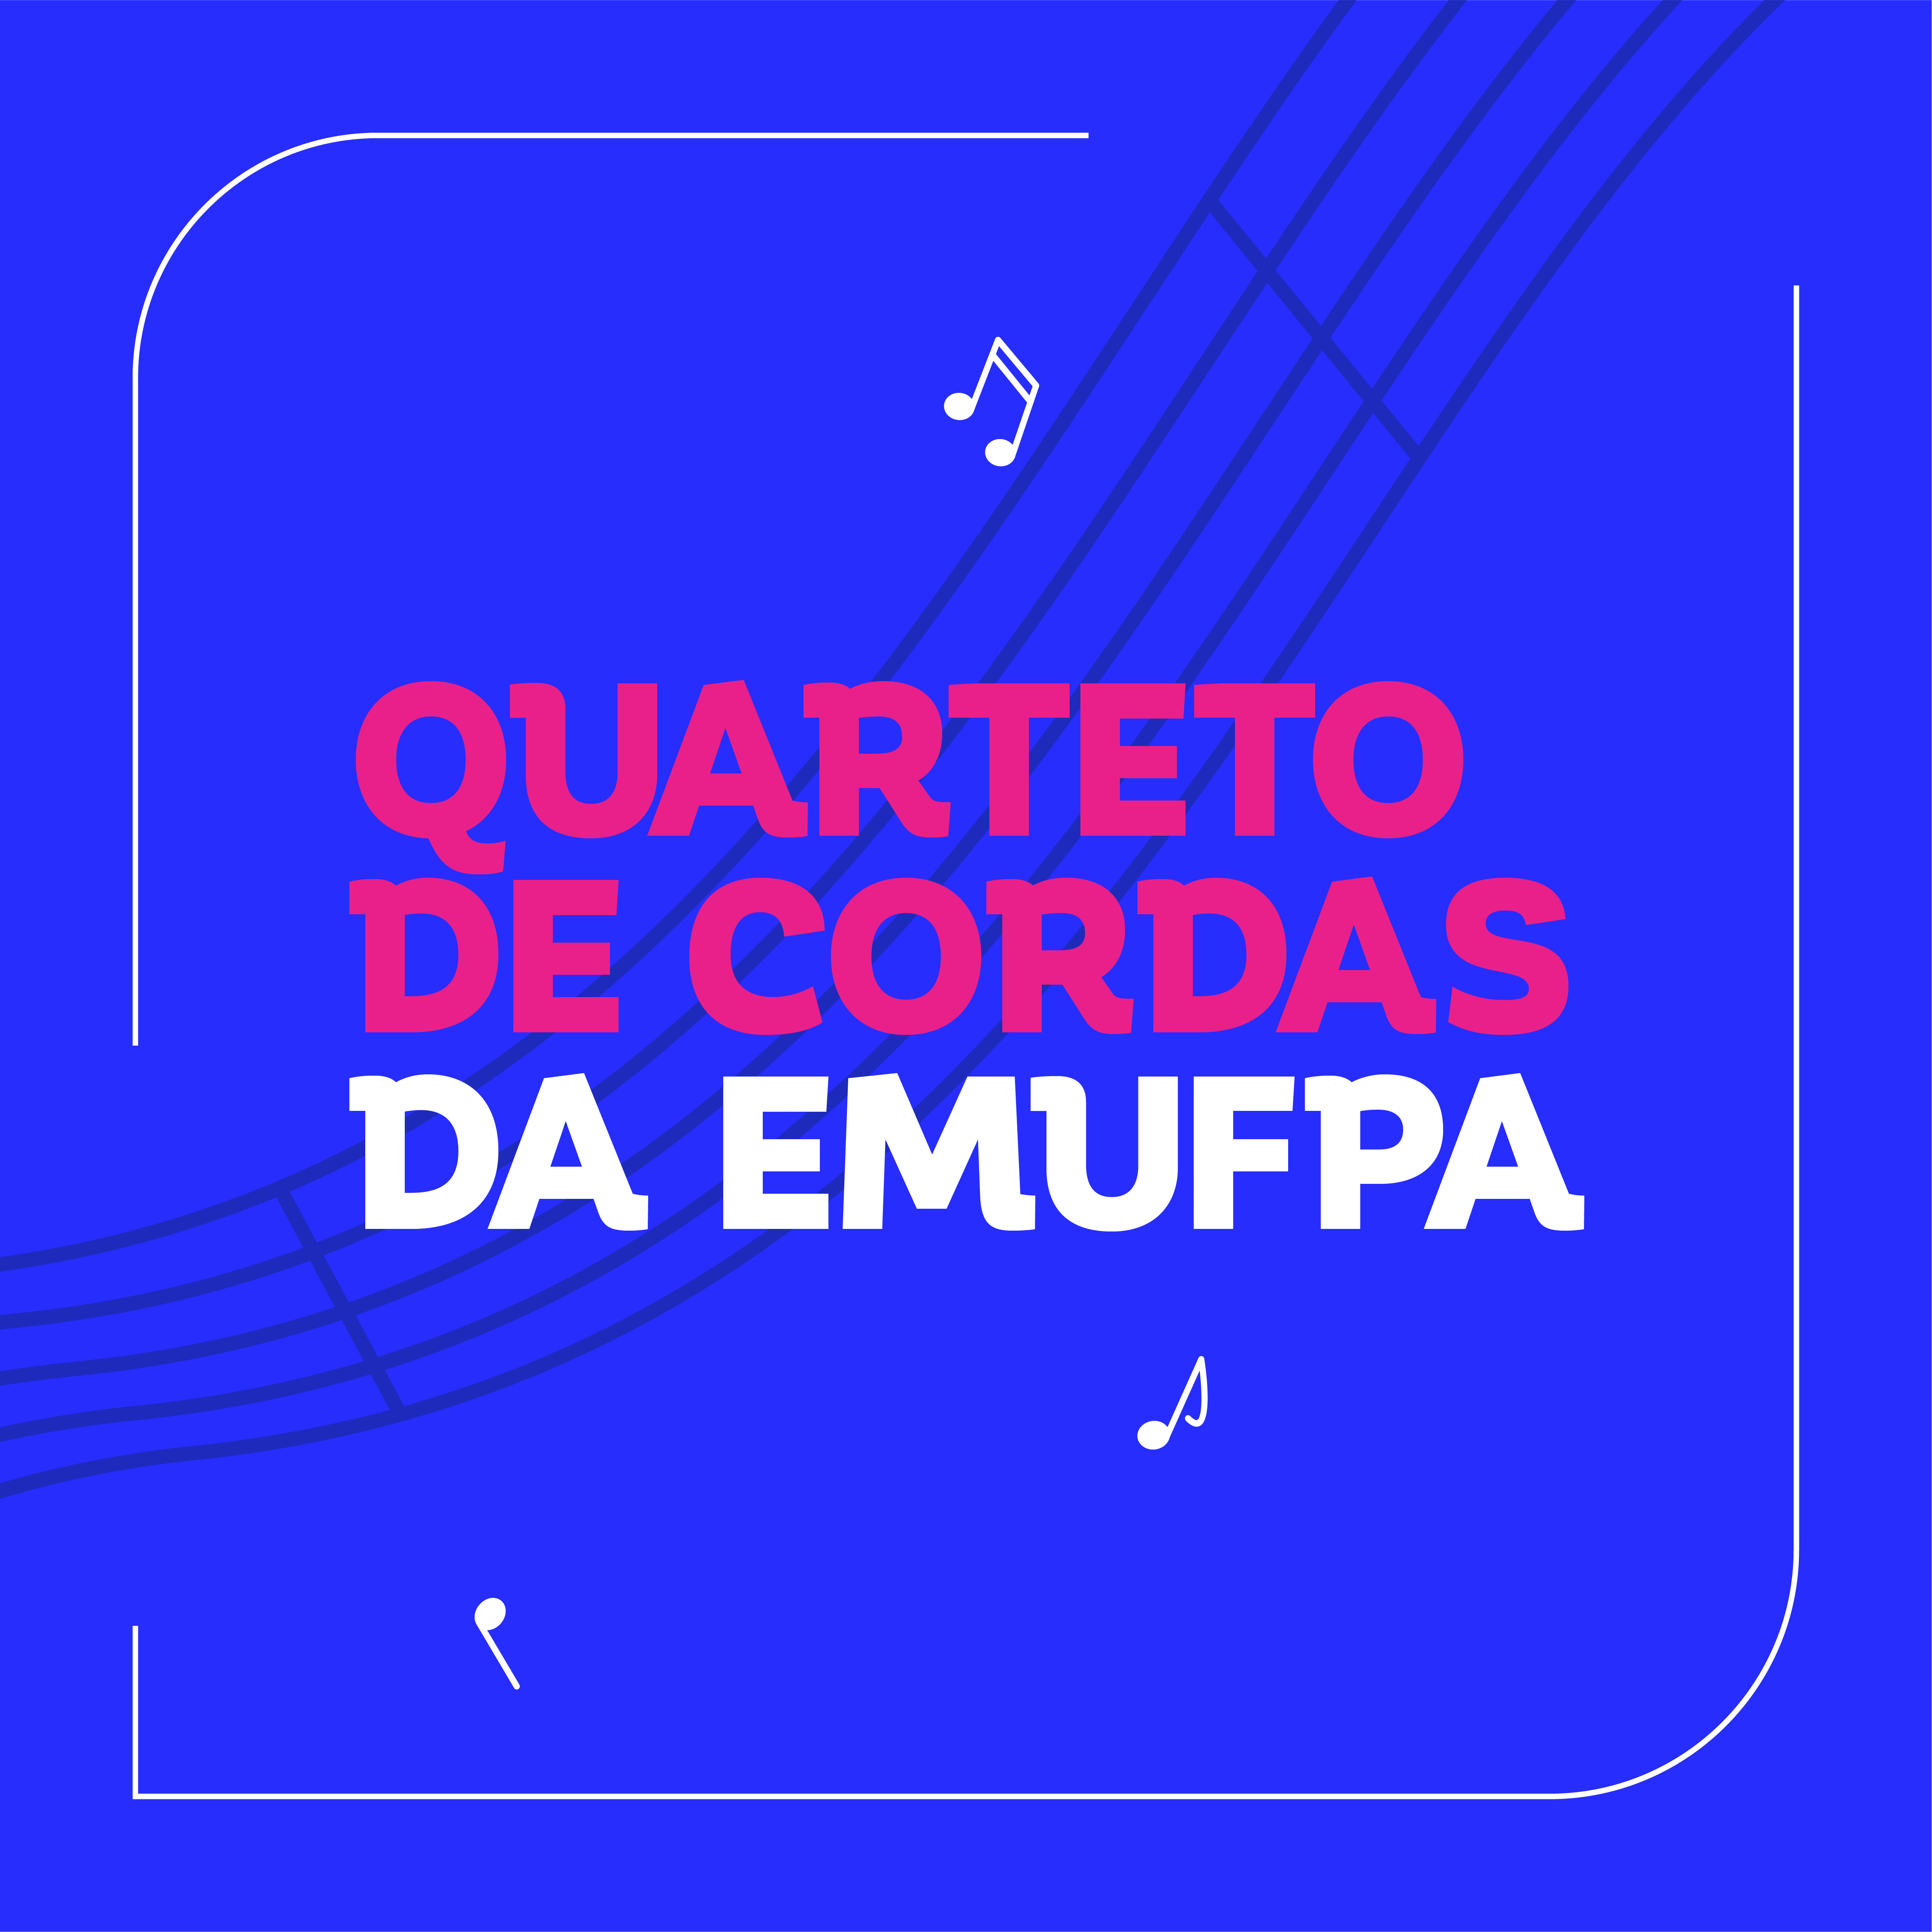 Quarteto de Cordas da EMUFPA